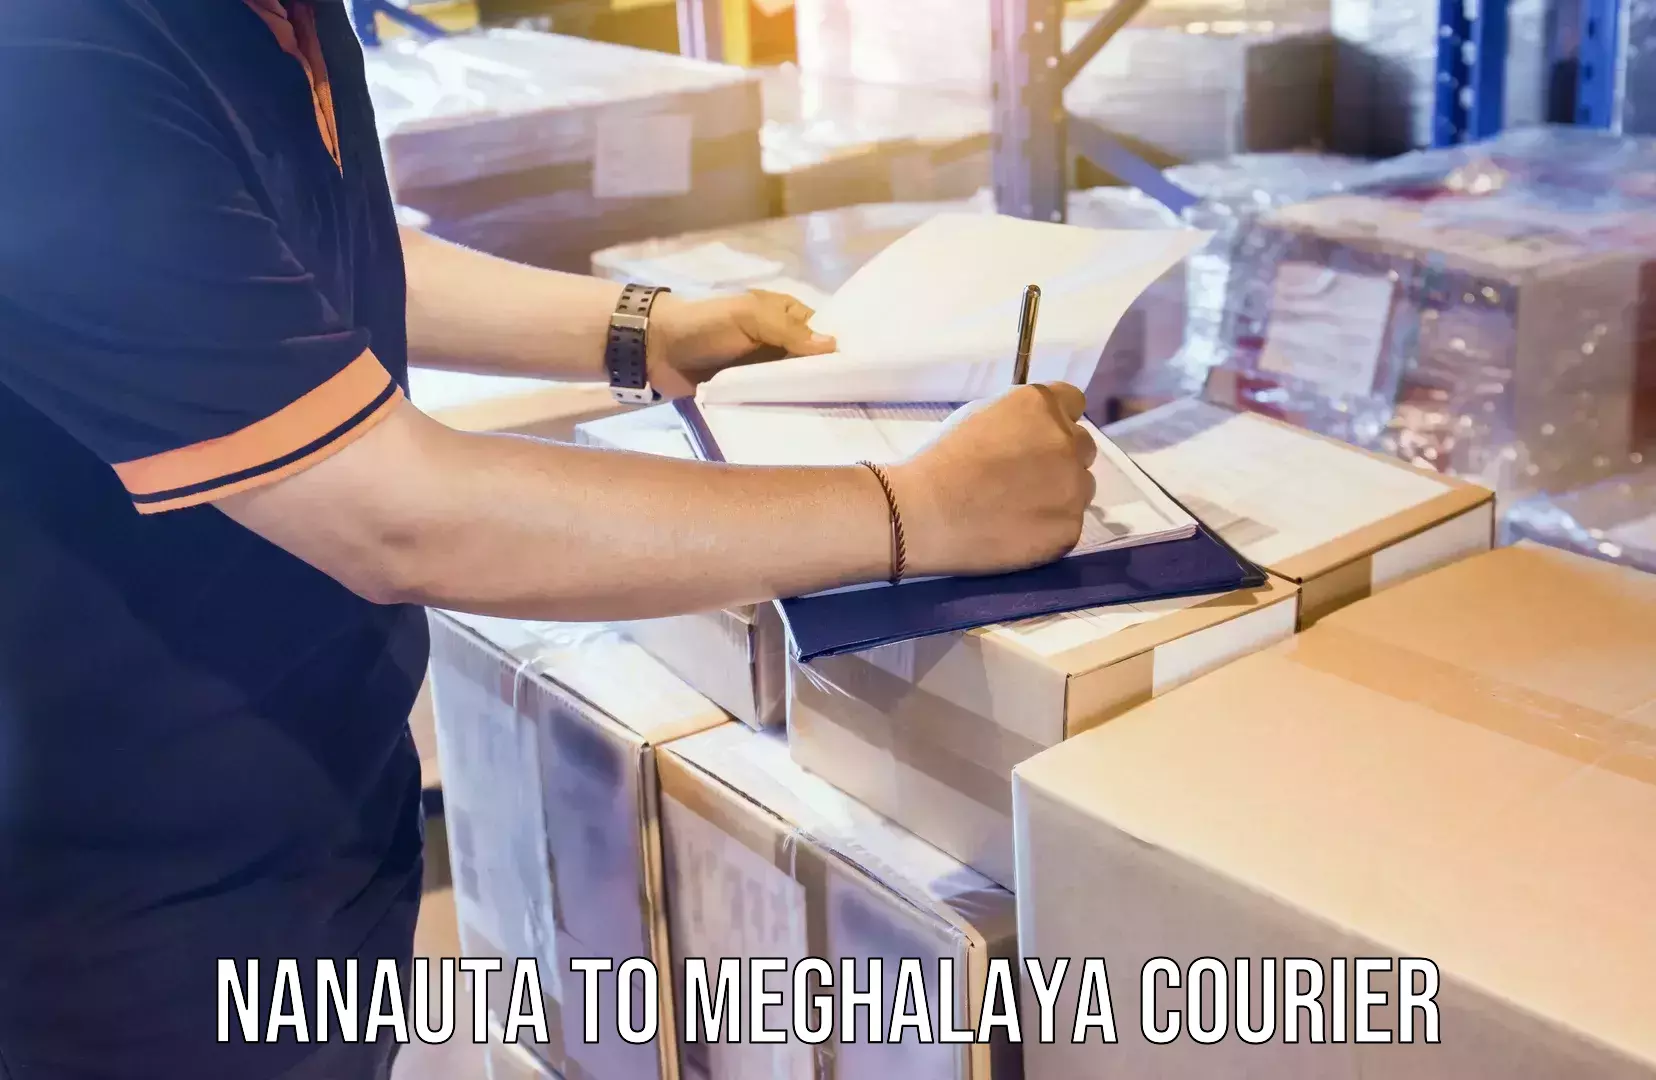 Cost-effective moving options Nanauta to Meghalaya